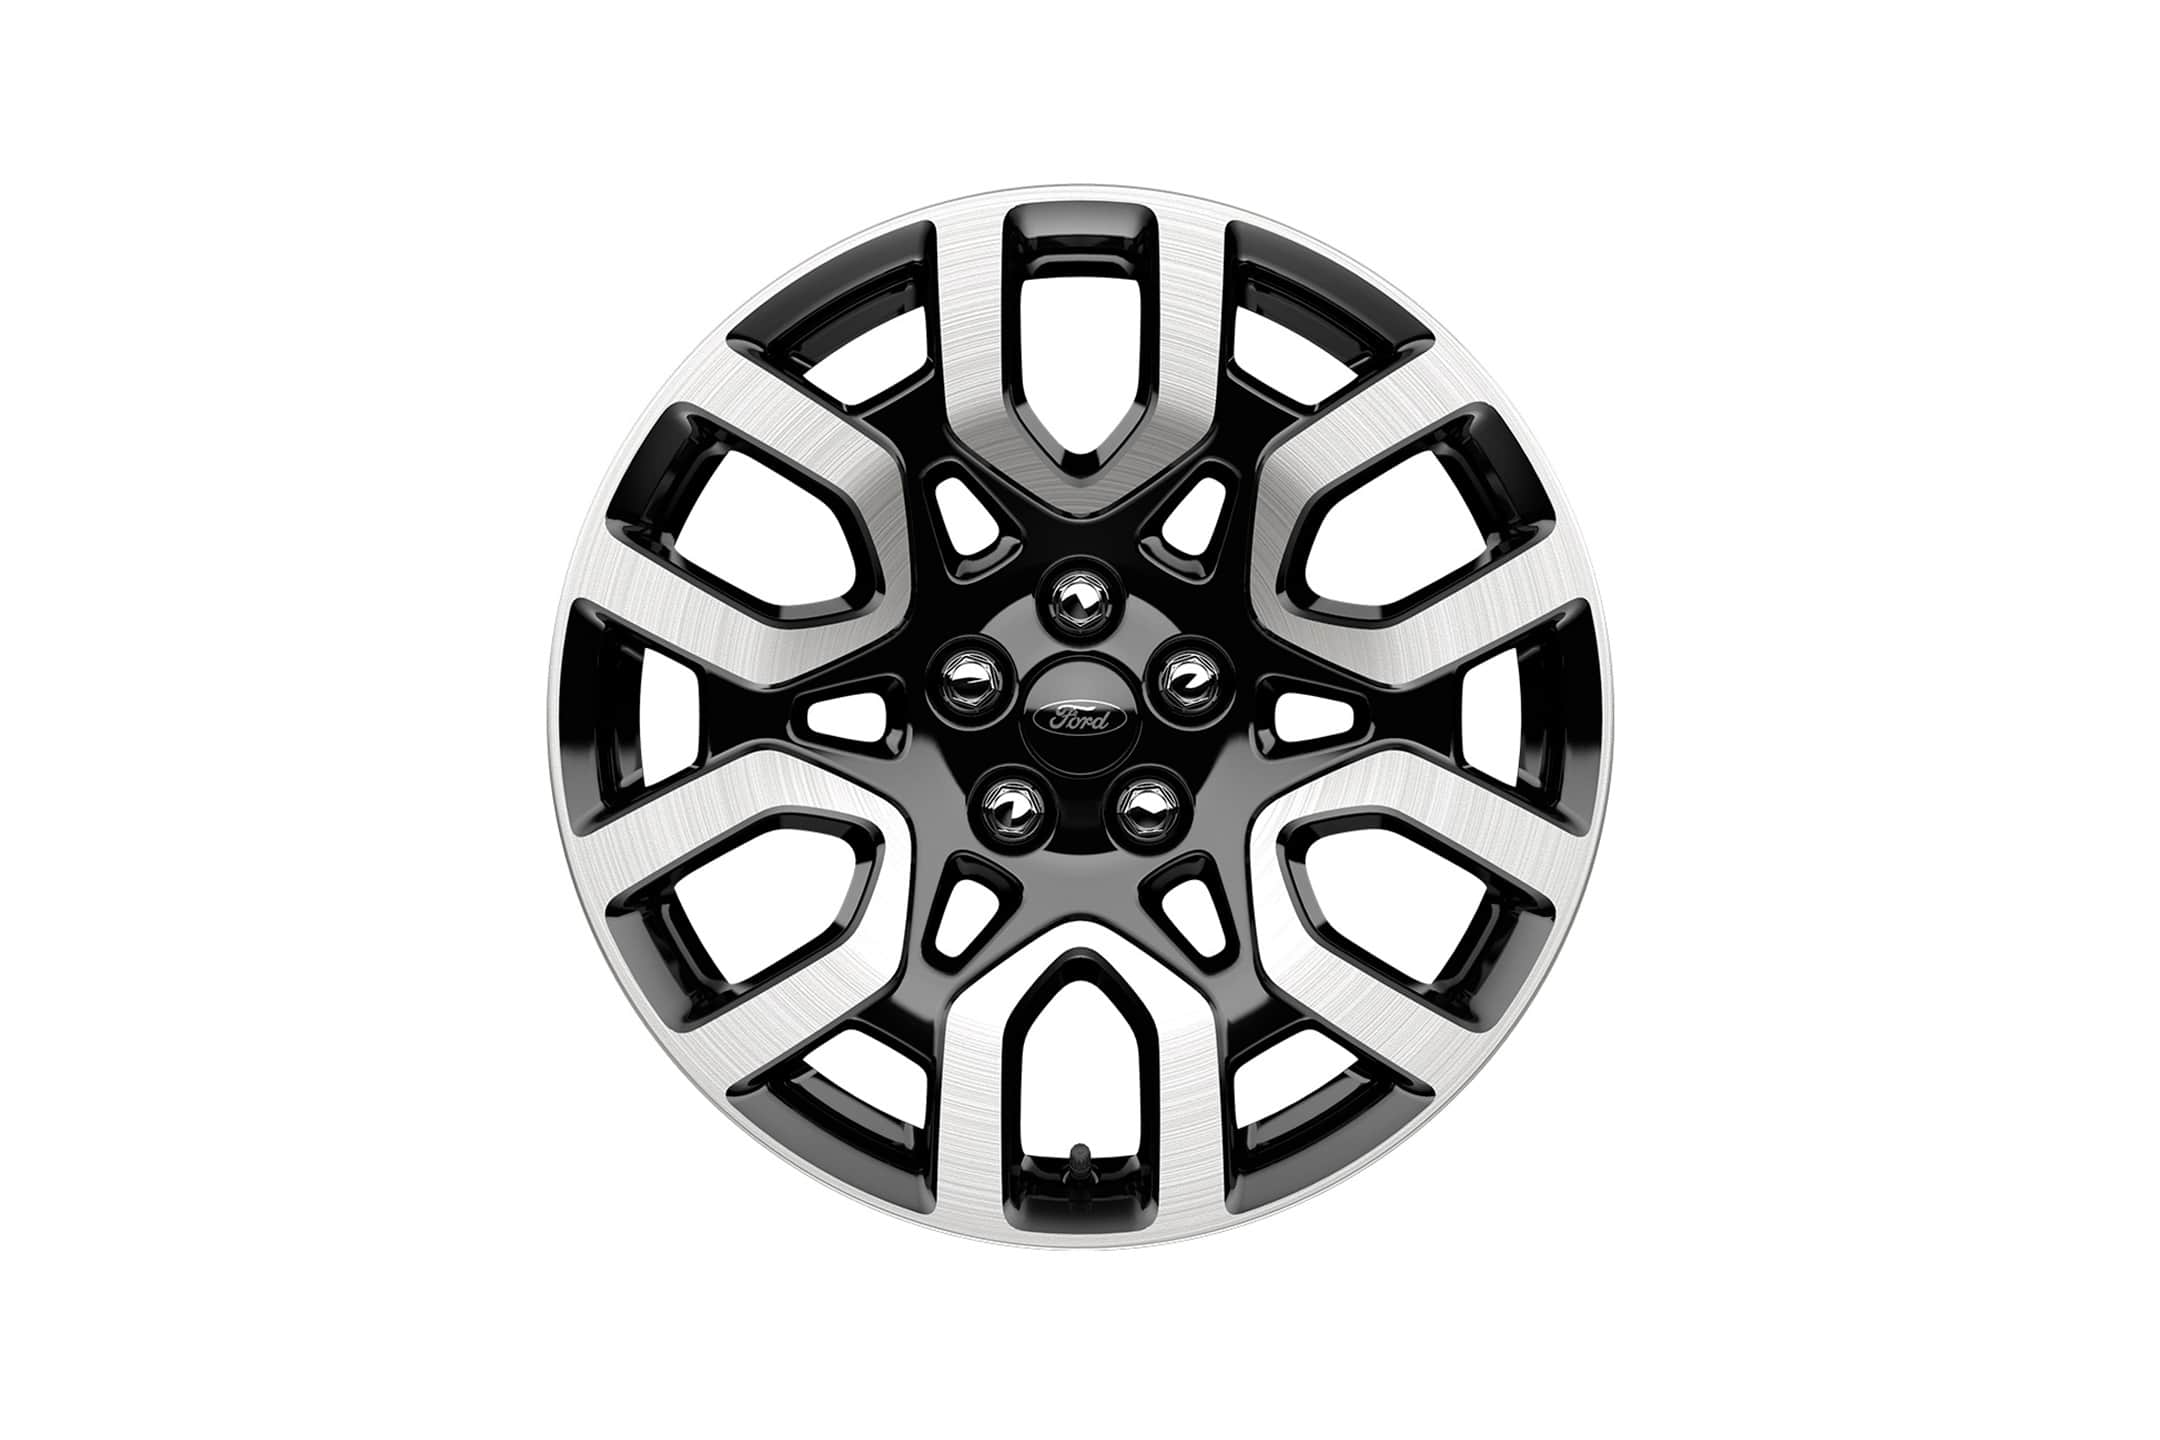 18-inch bright aluminum wheel